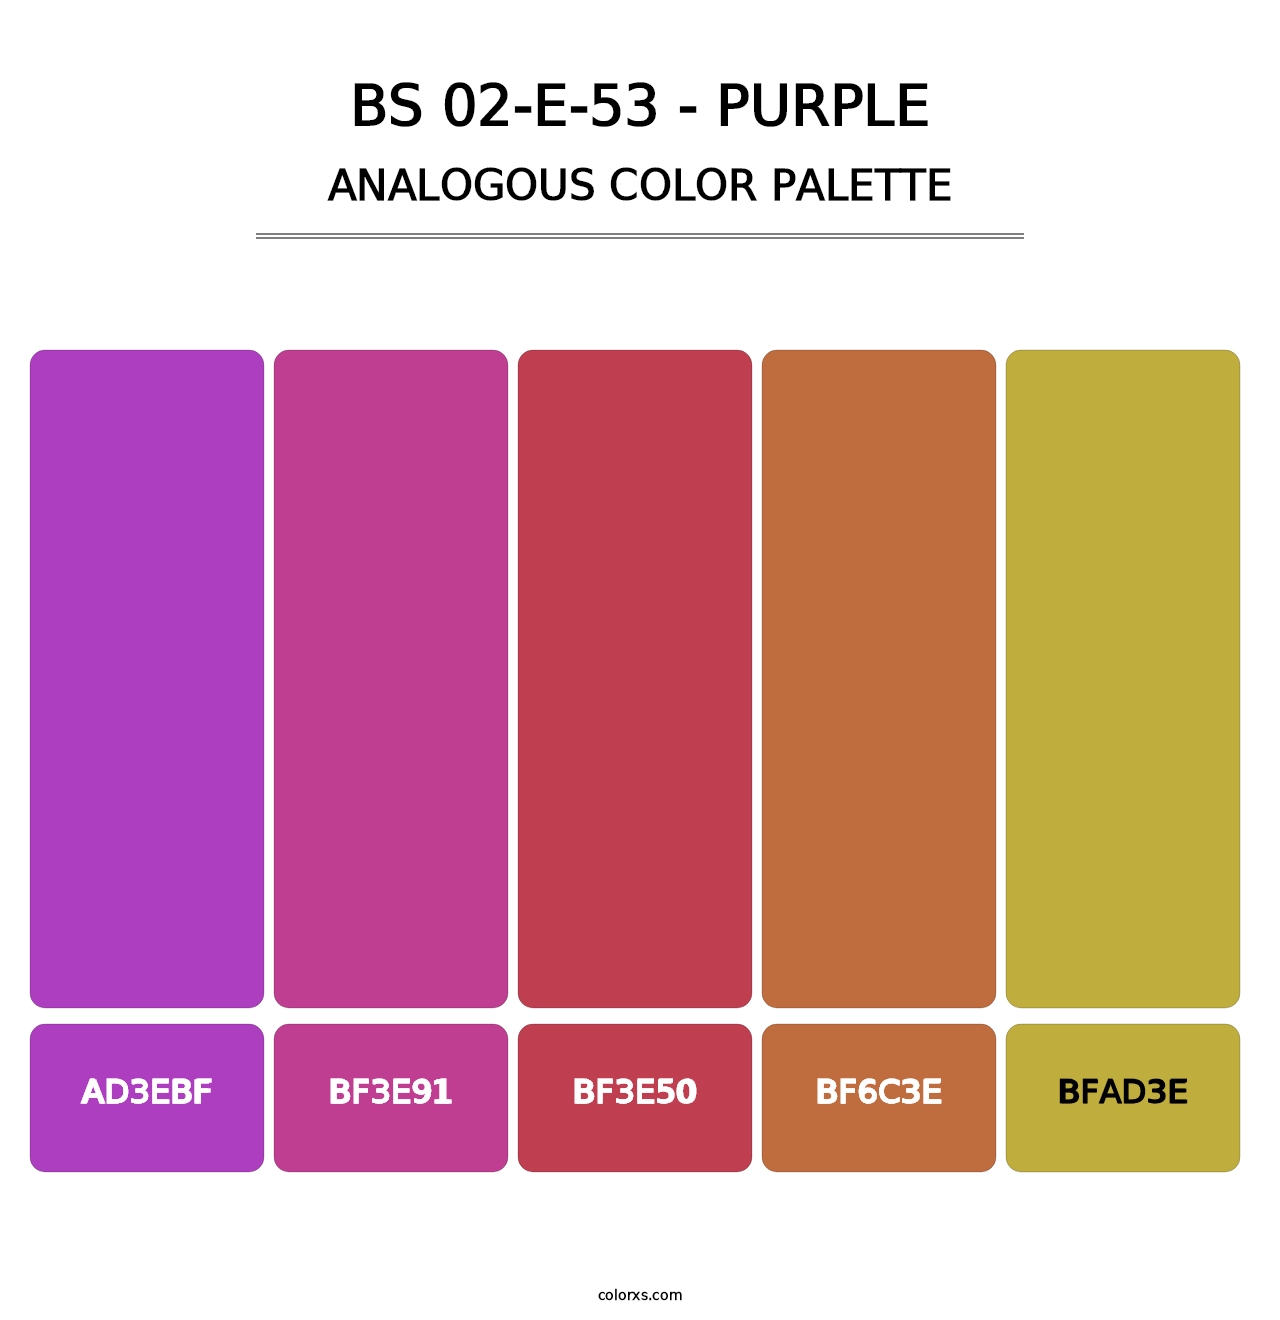 BS 02-E-53 - Purple - Analogous Color Palette